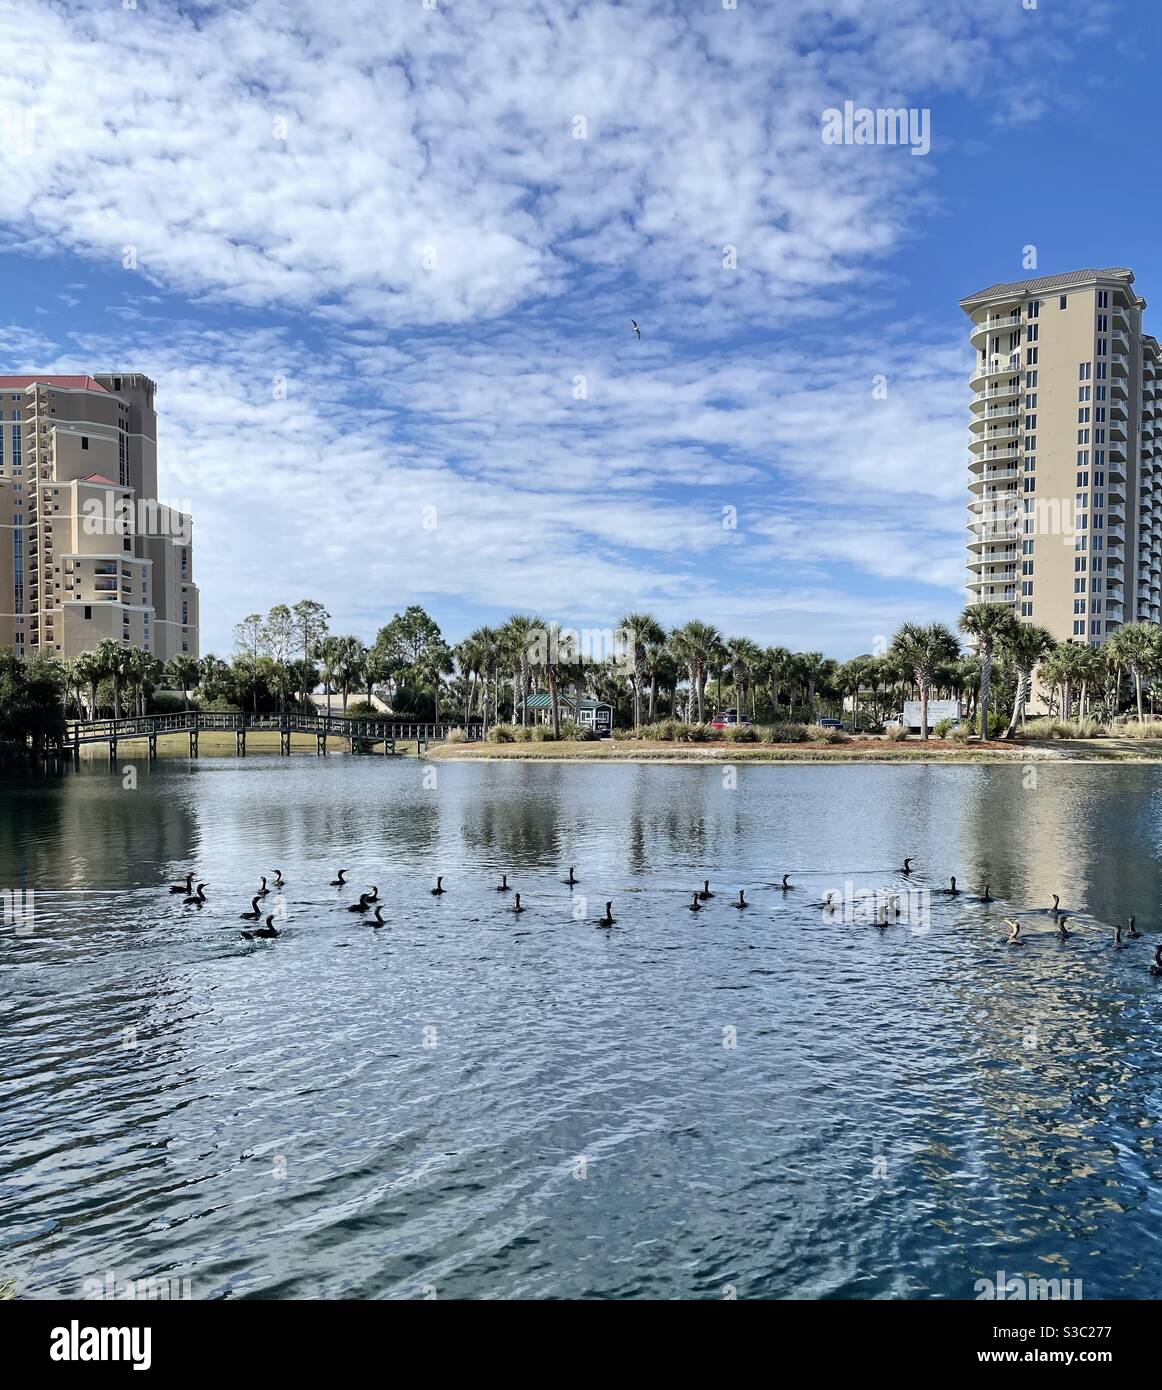 Schar von ziehenden Kormoran Vögel schwimmen in einem Teich von Wasser mit Stadtbild Hintergrund Stockfoto